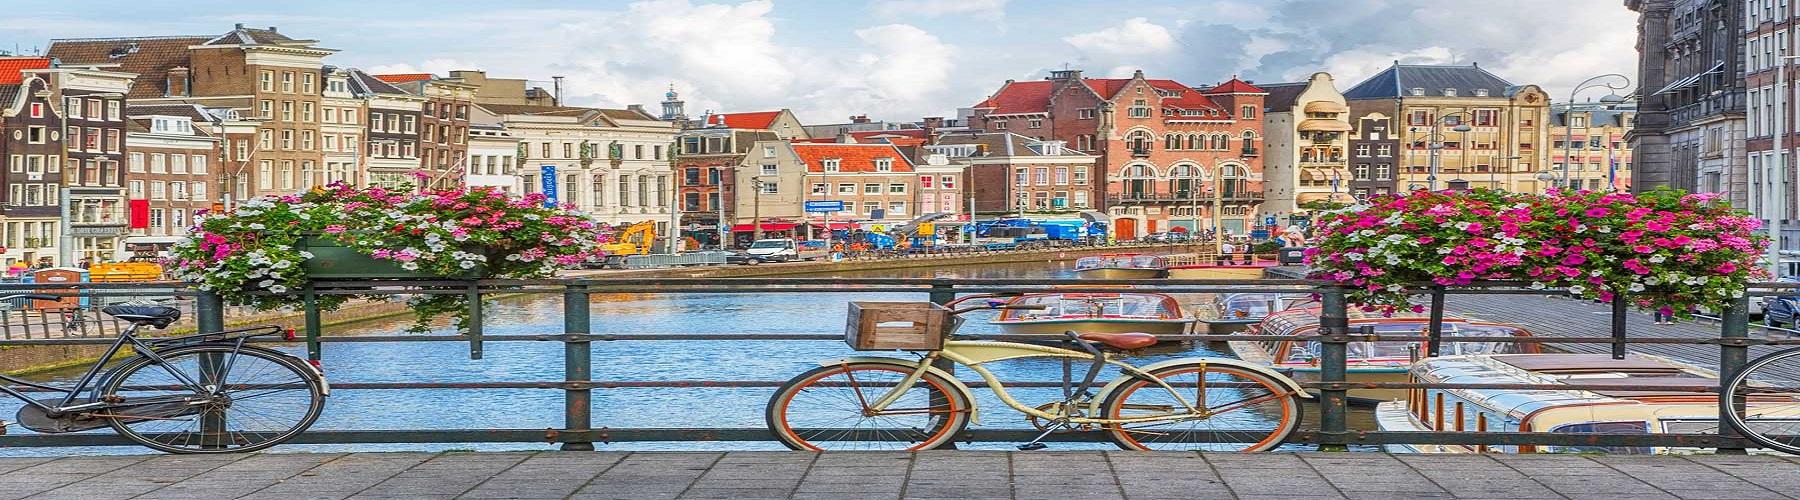 Амстердам путешествие в сказку